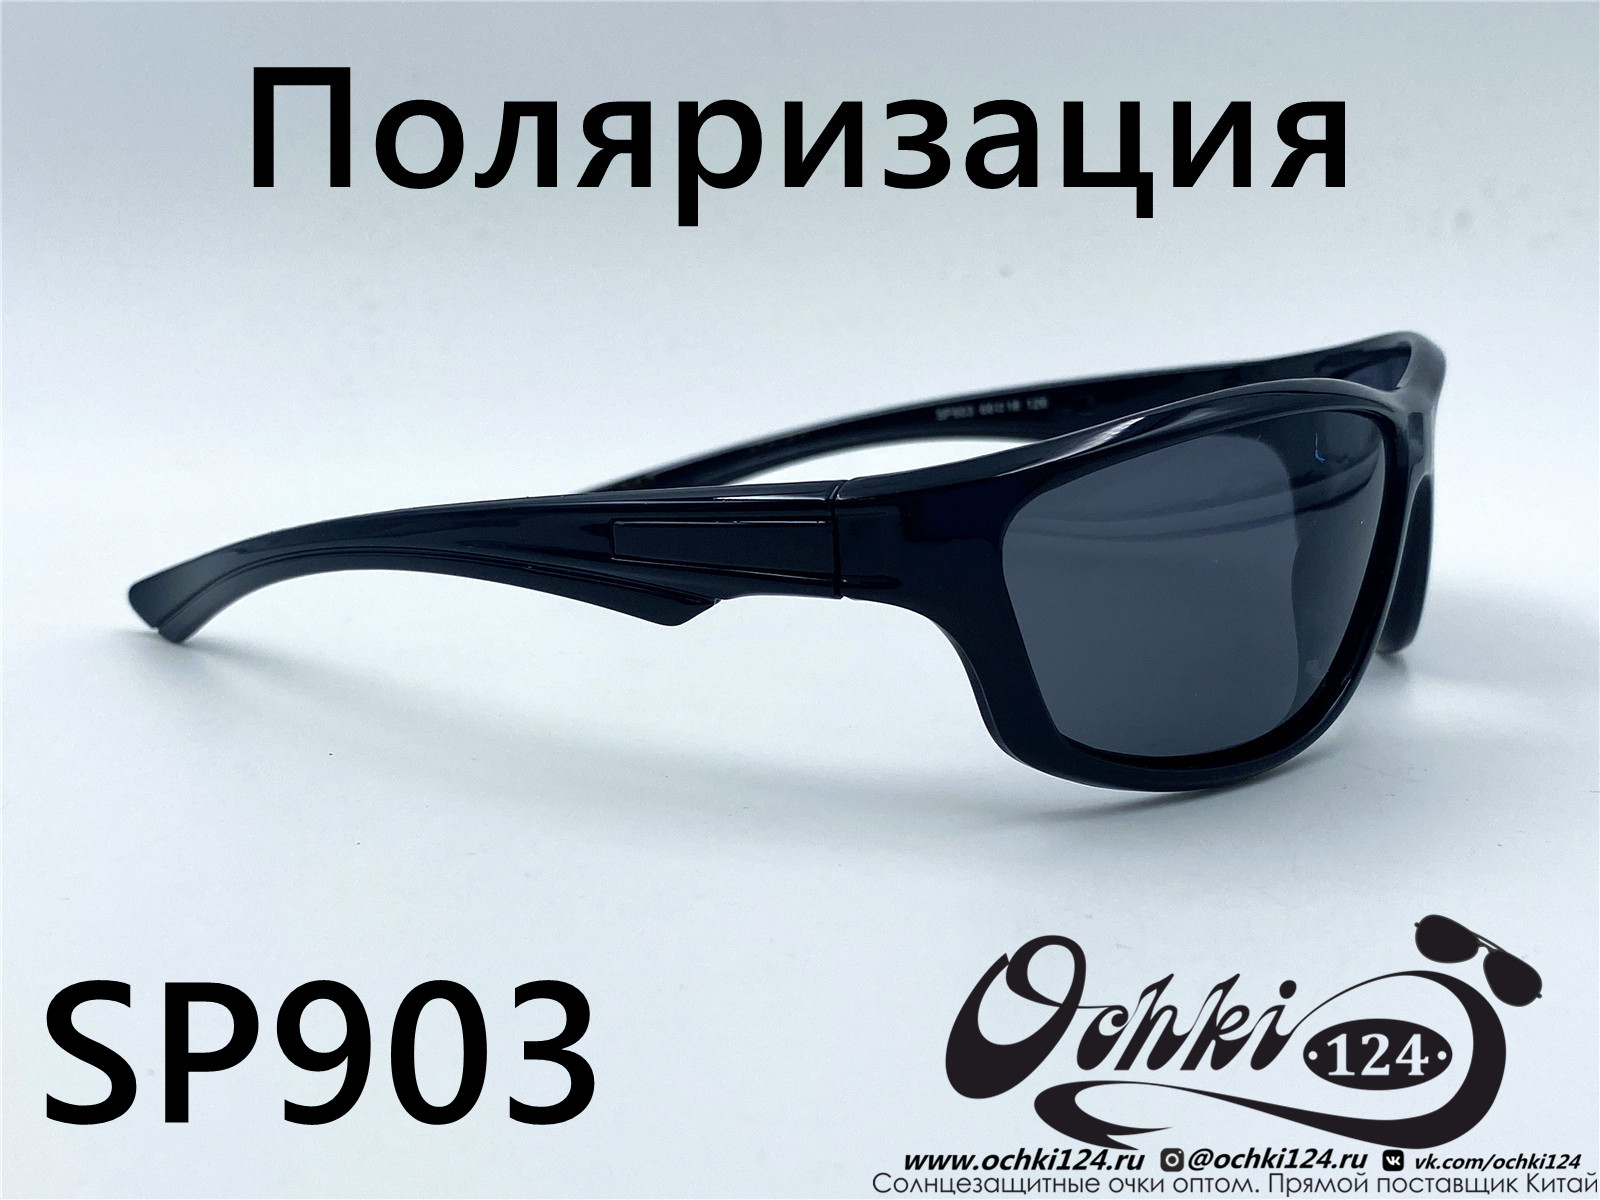  Солнцезащитные очки картинка 2022 Мужские Поляризованные Спорт Materice SP903-1 